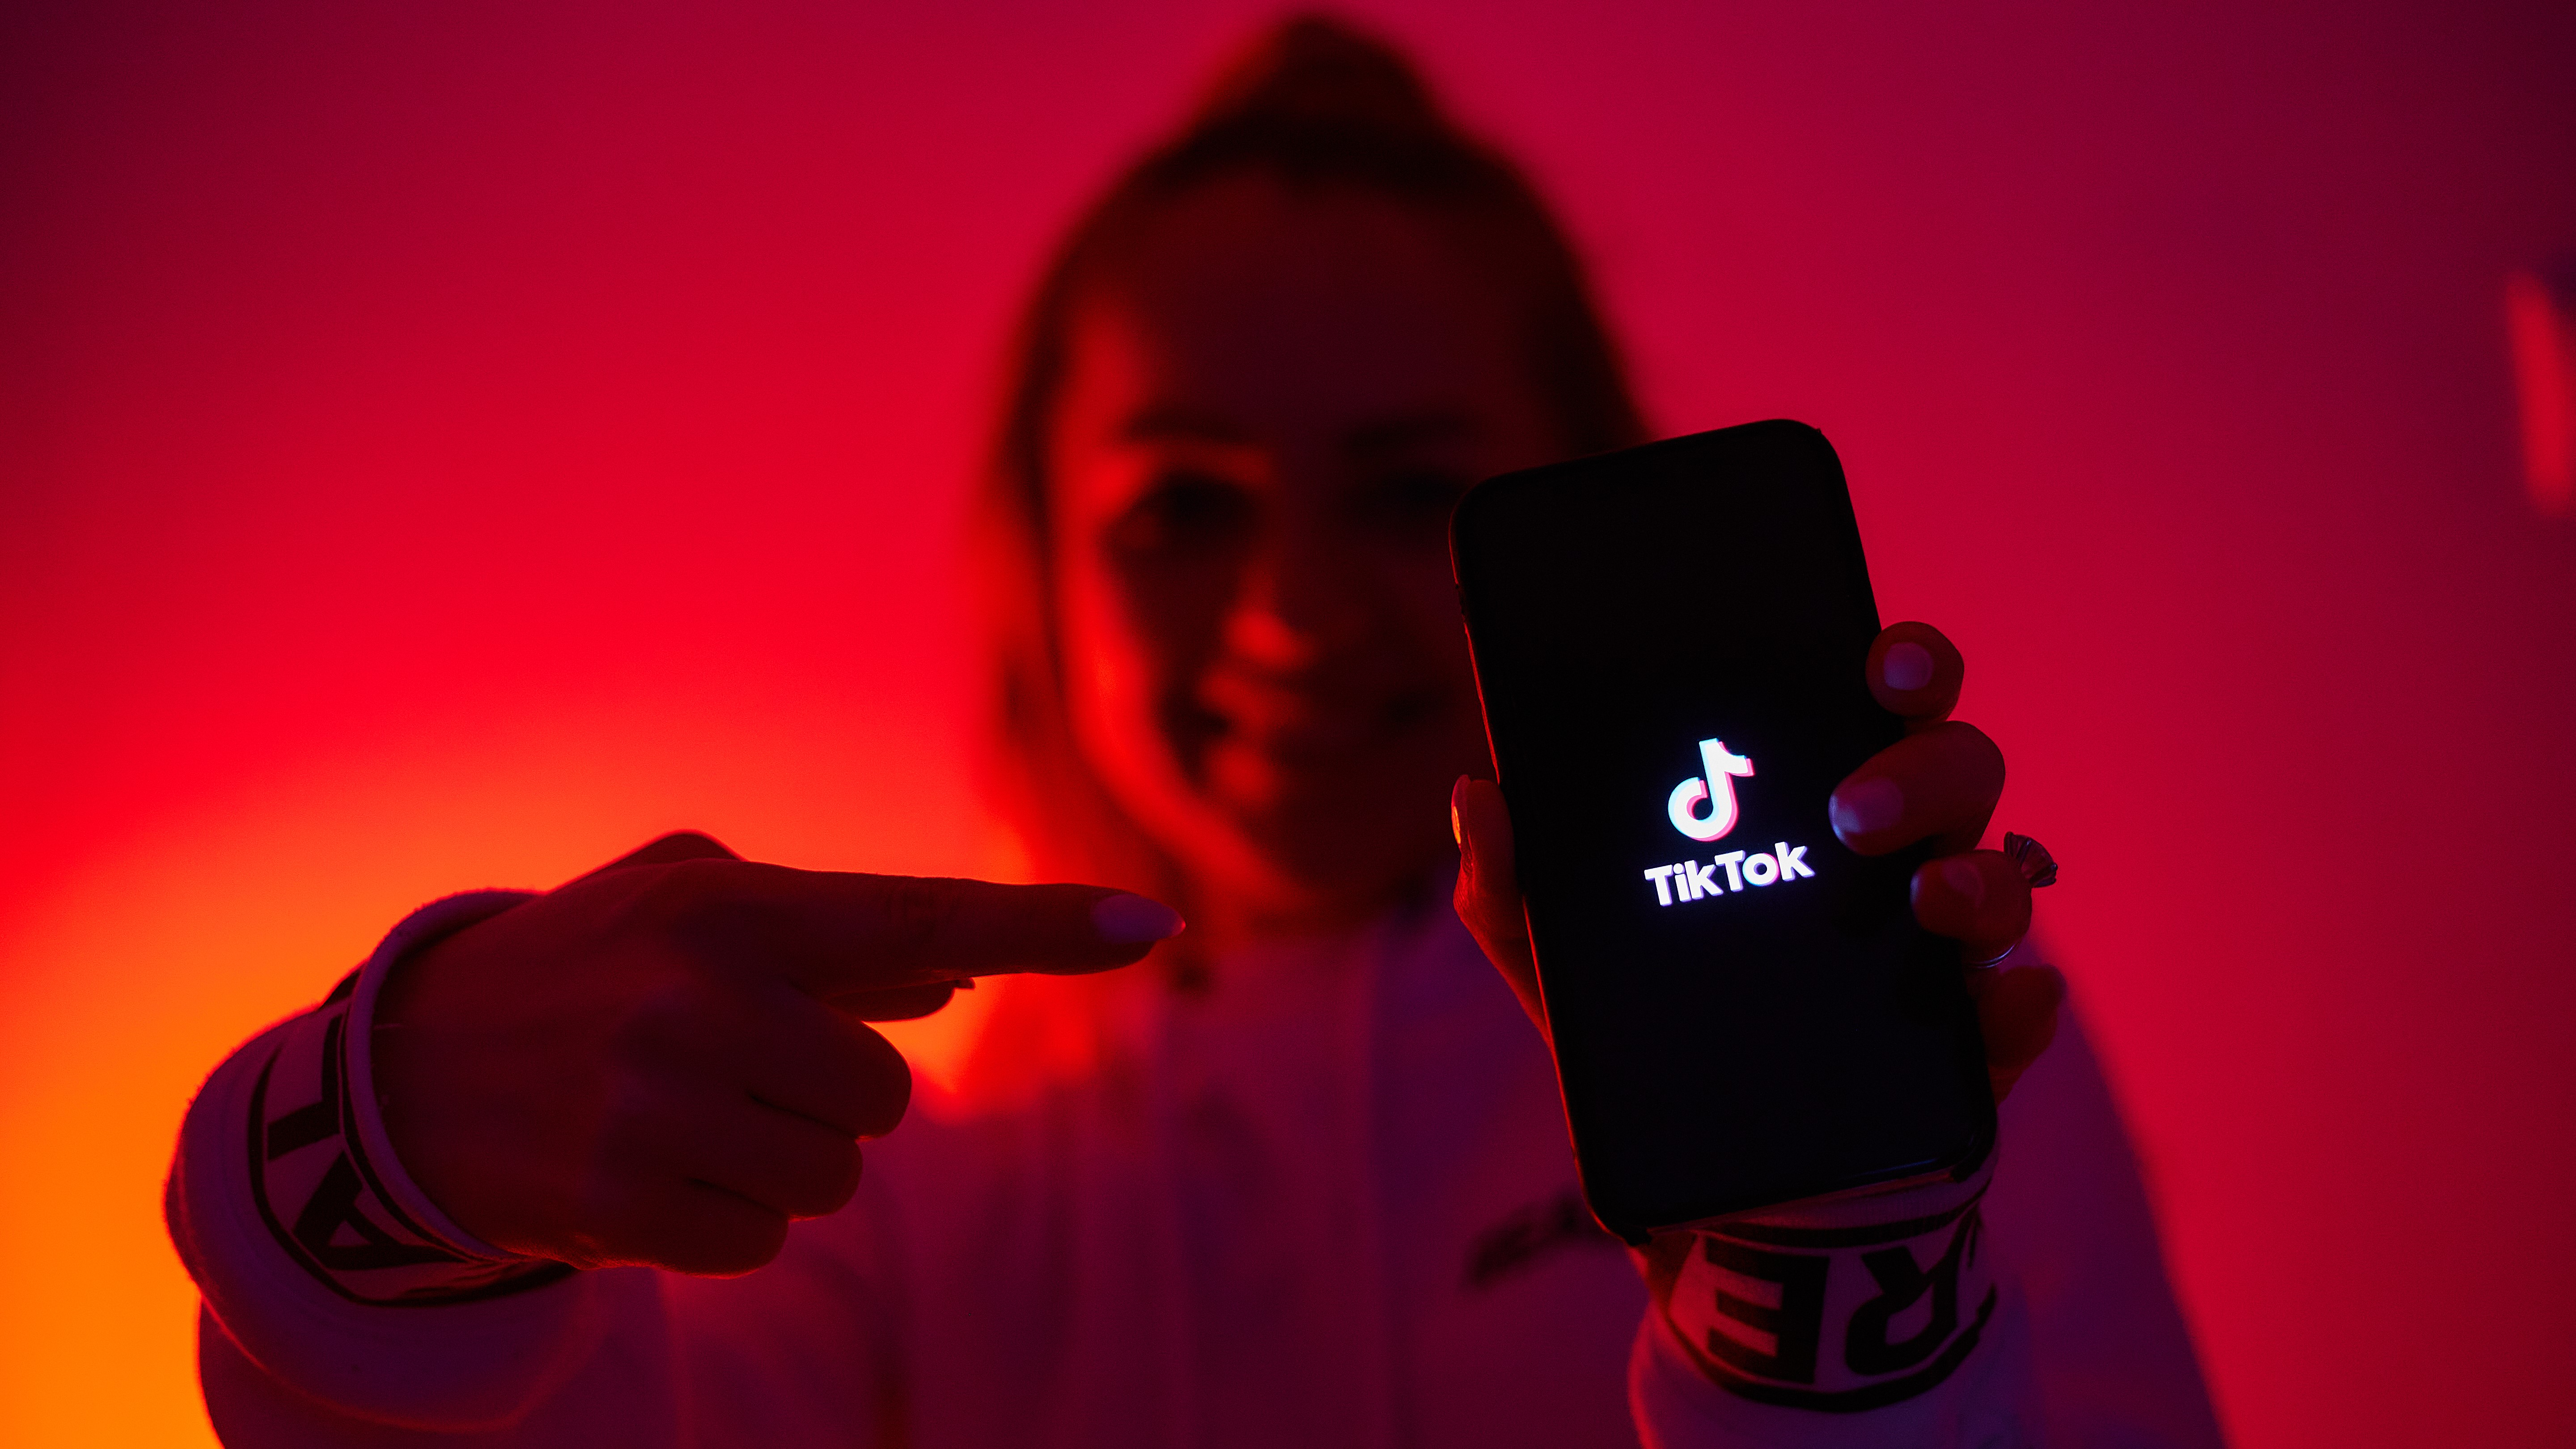 Seorang gadis dengan sisi gelap tiktok mempromosikan jejaring sosial dengan smartphone di tangan.